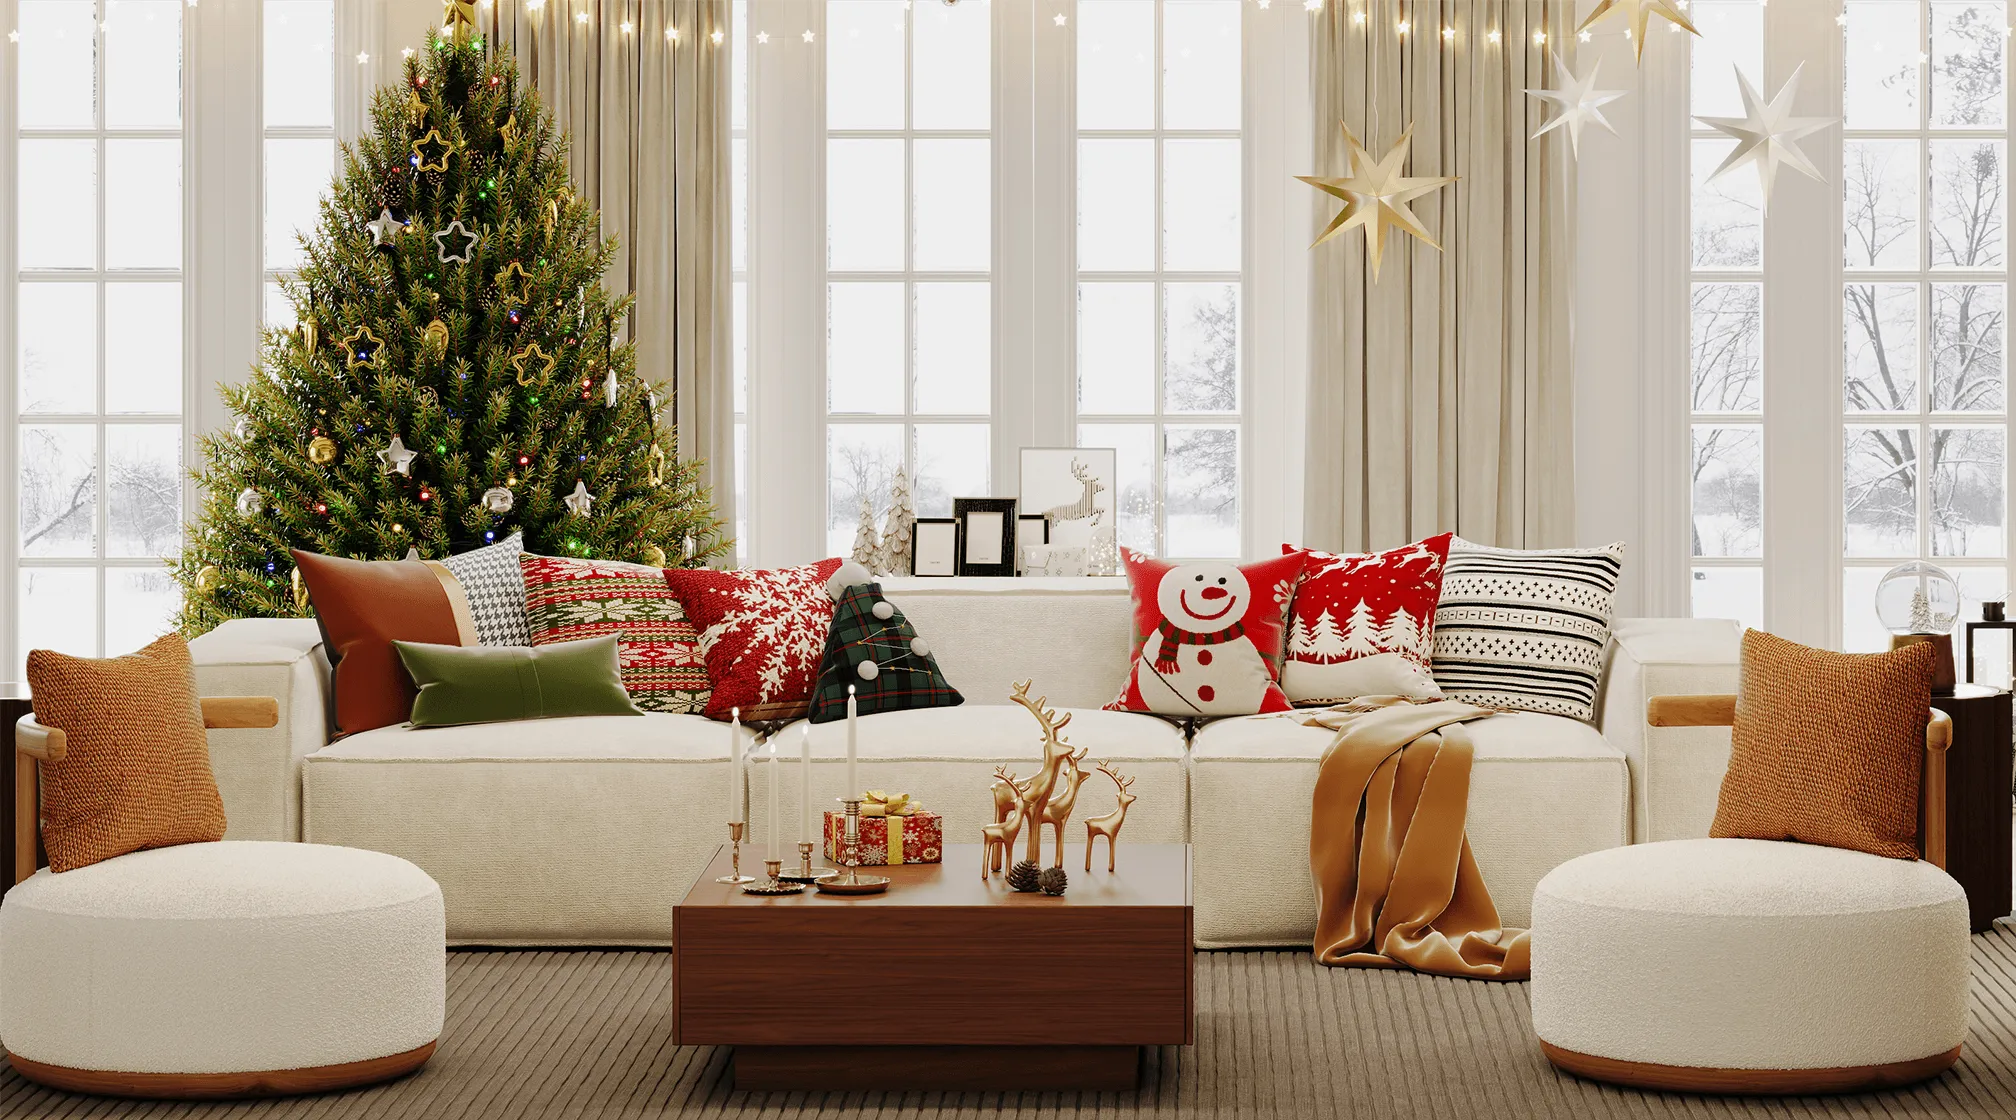 Sofa Winter Decor For Christmas